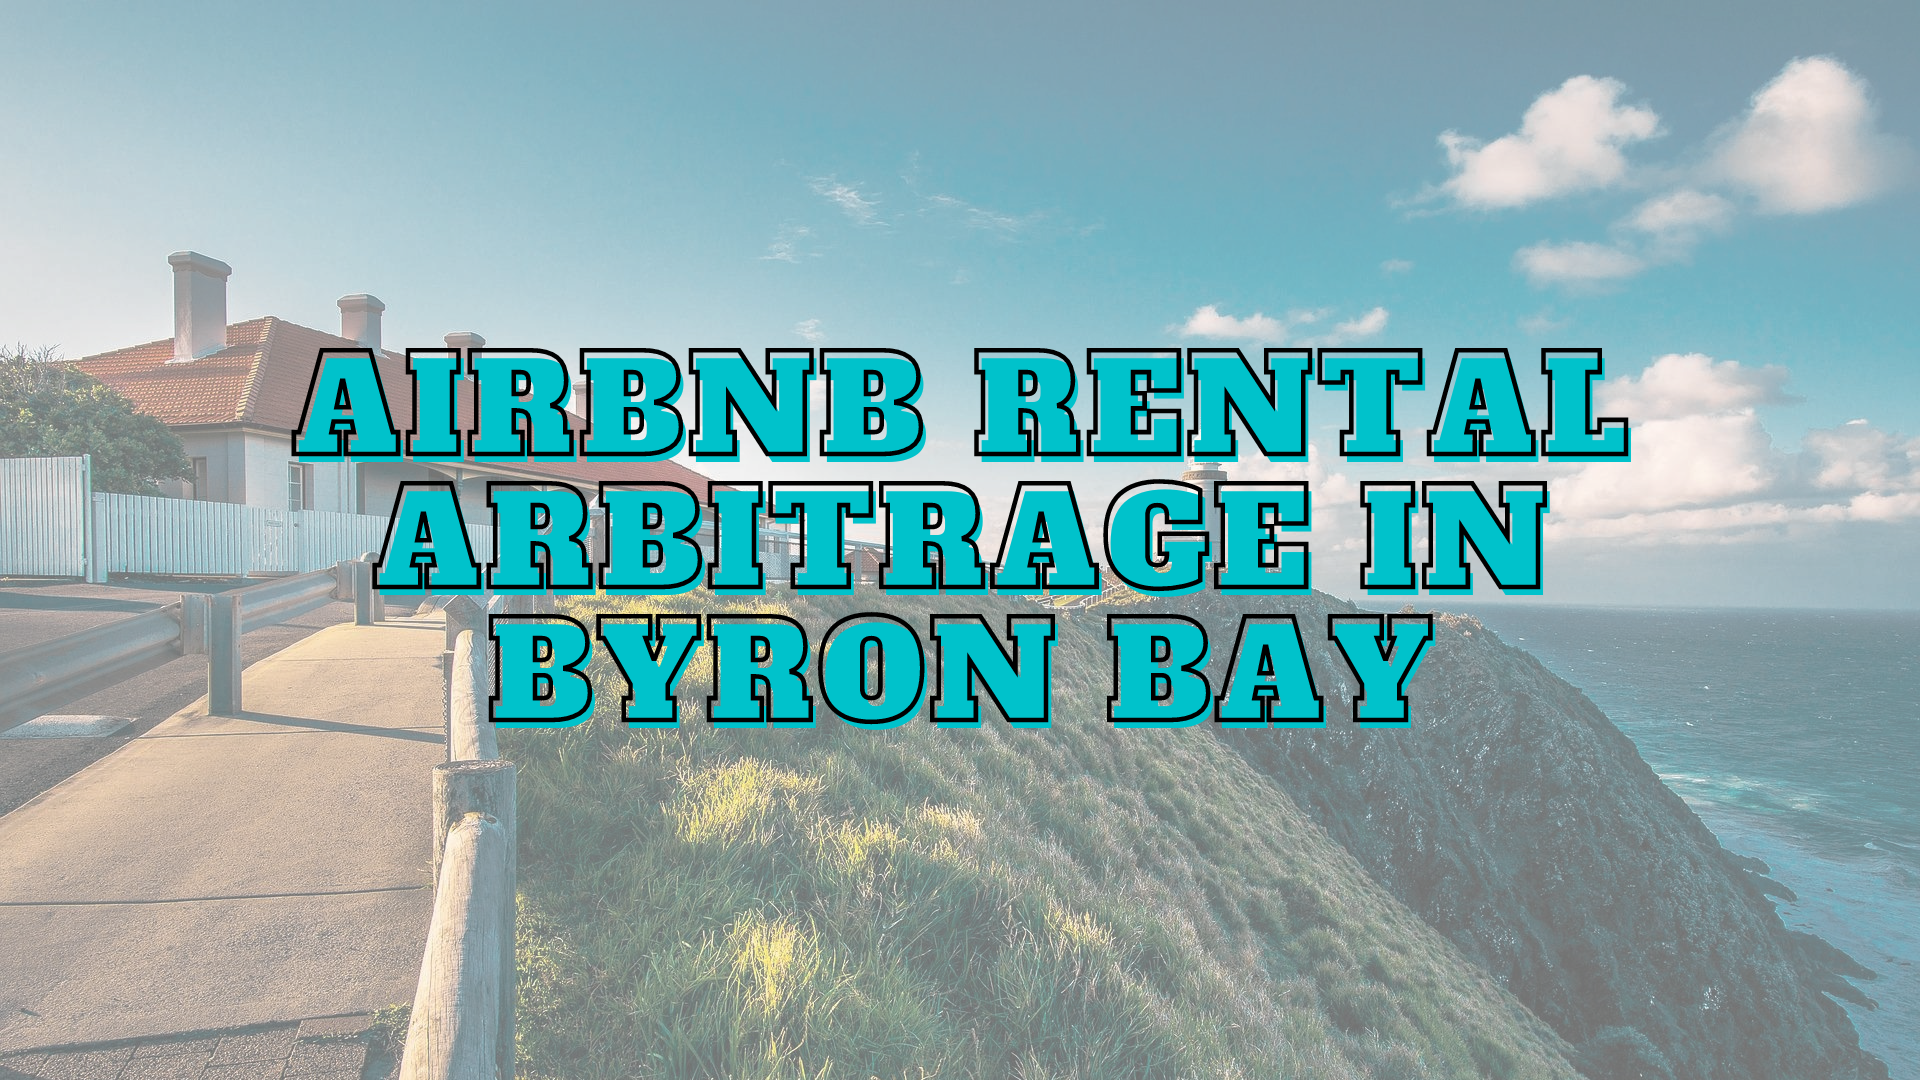 Byron Bay airbnb rental arbitrage